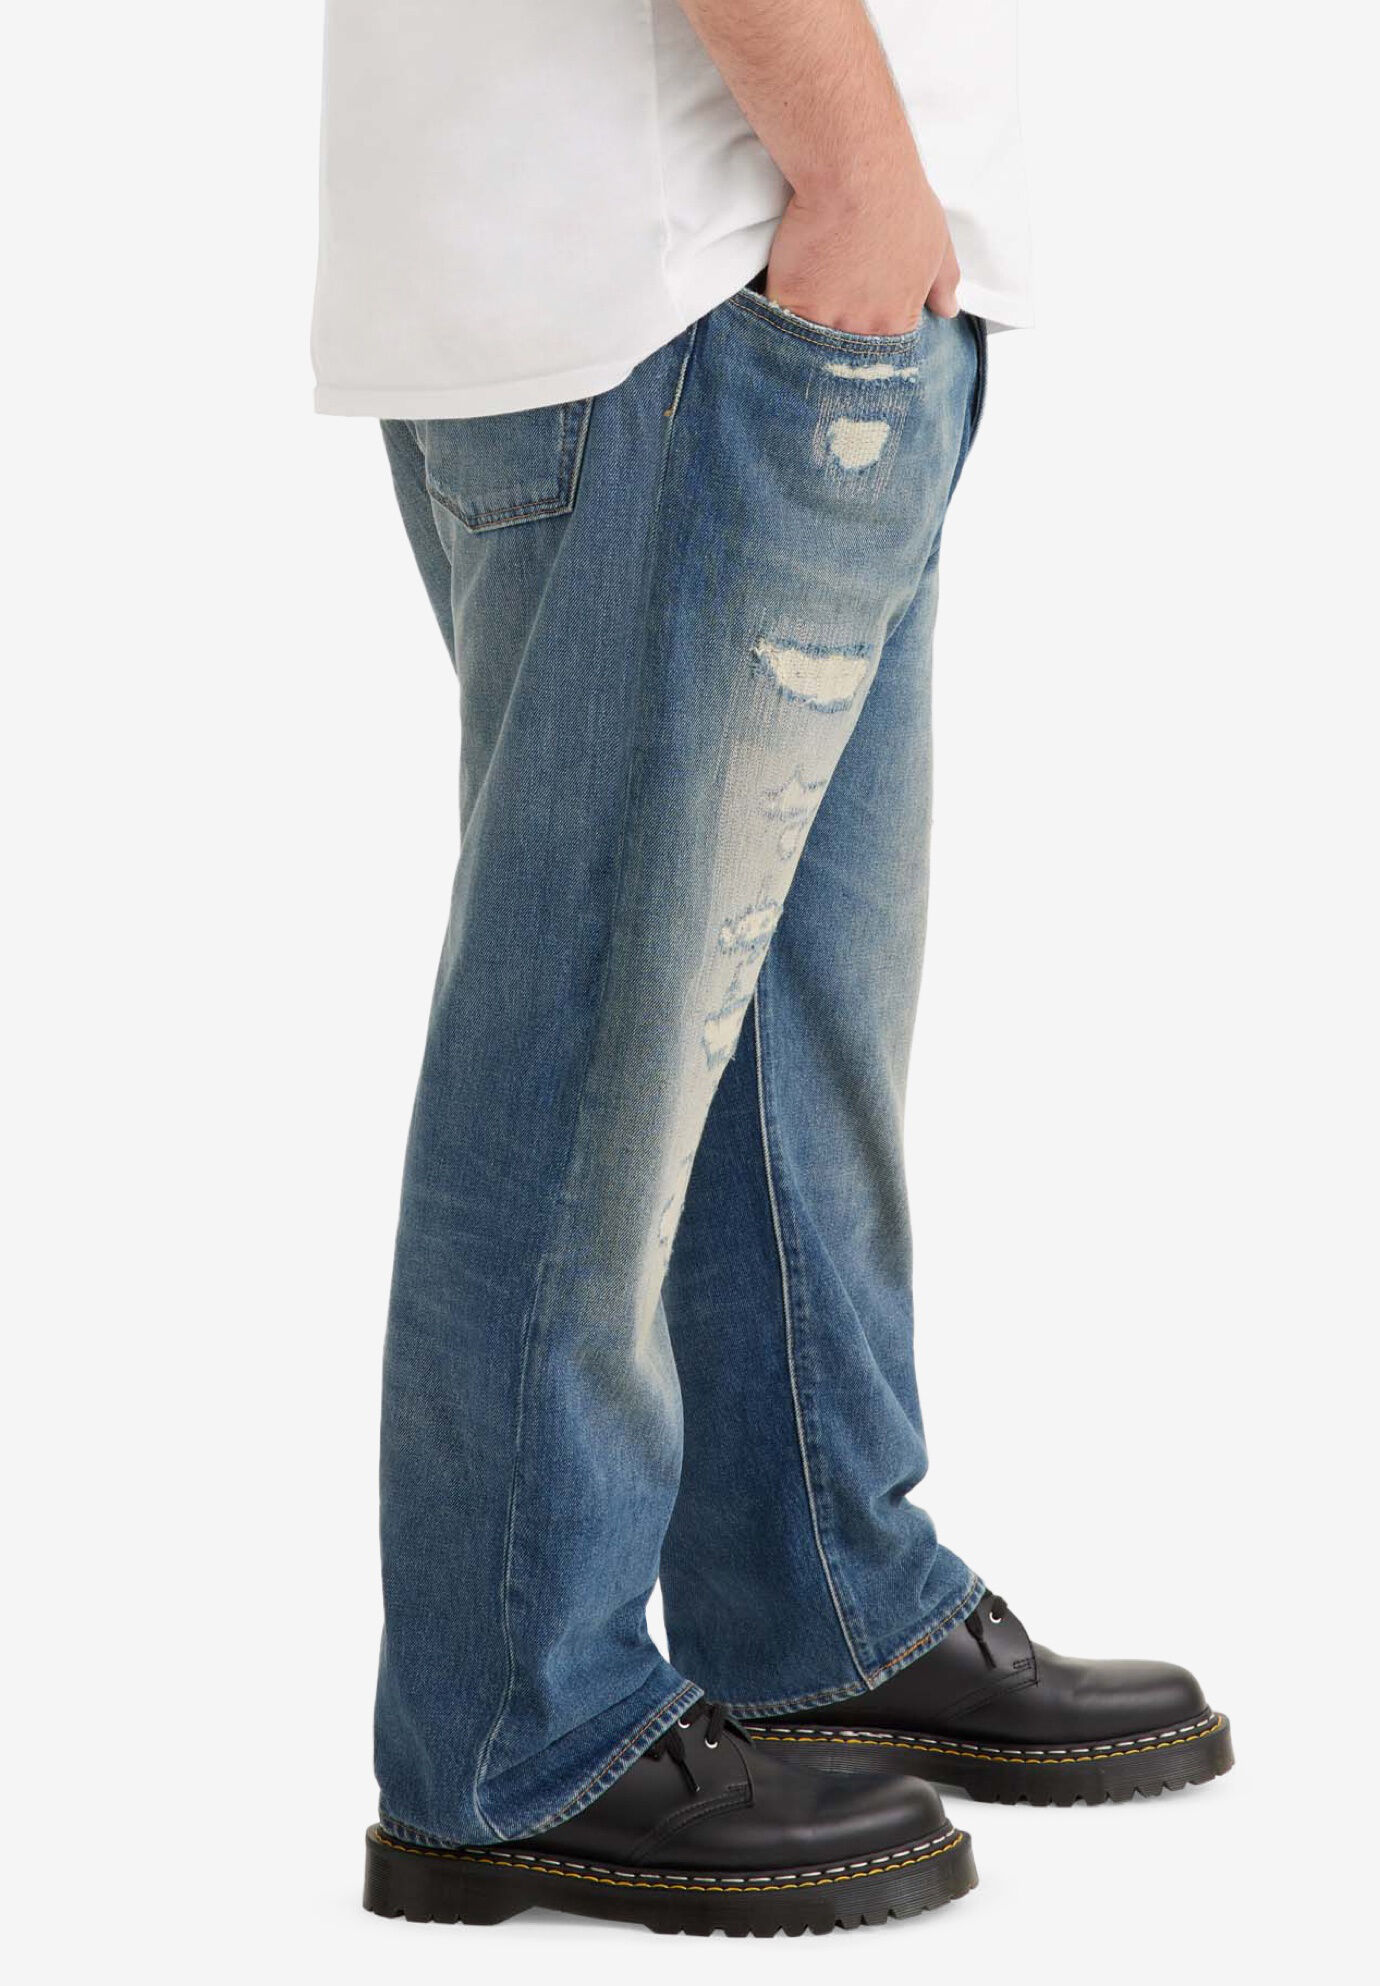 levis jeans 501 original